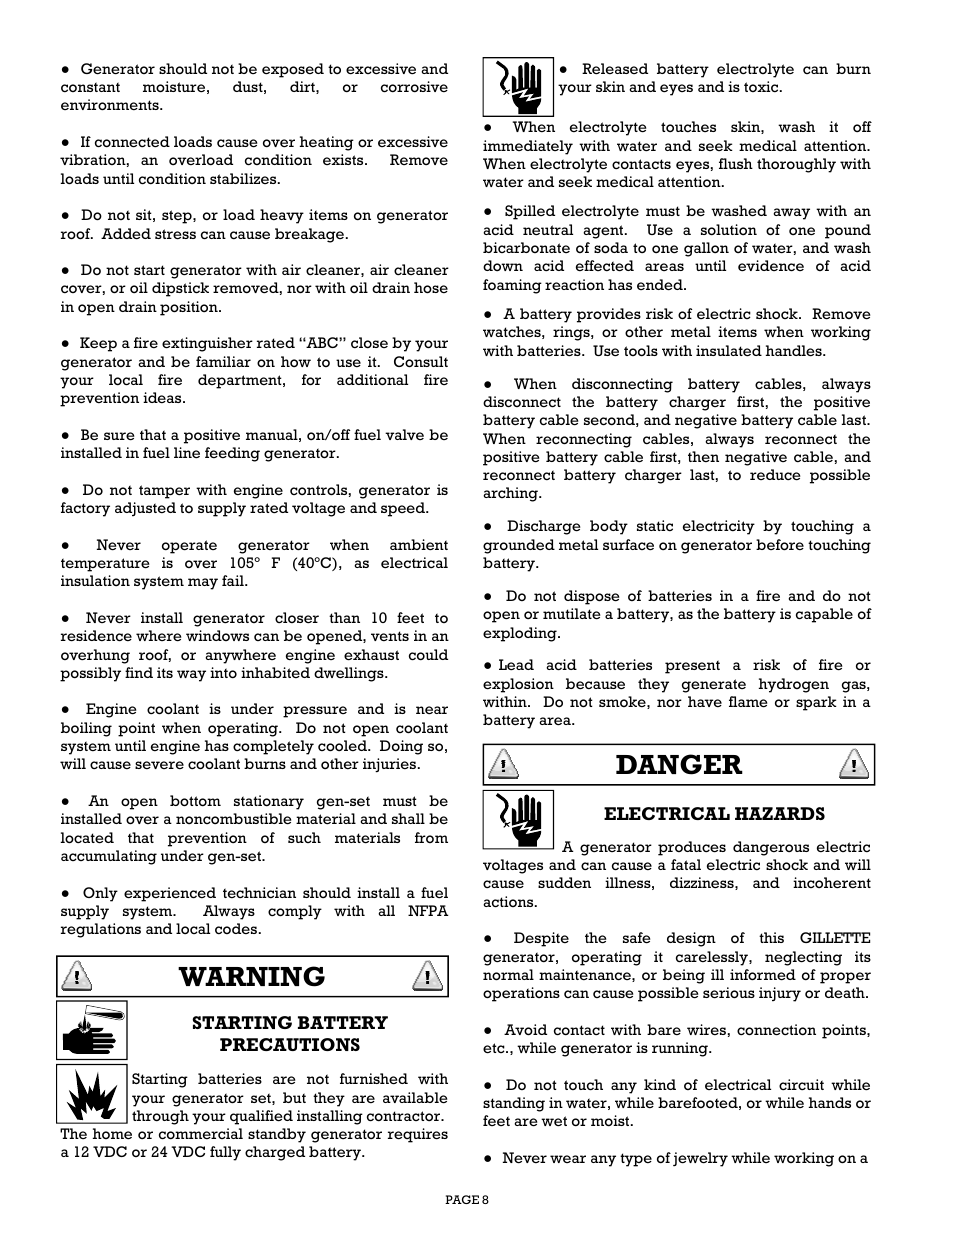 Warning, Danger | Gillette Generators SPMD-2500 THRU SPMD-4000 User Manual | Page 8 / 27